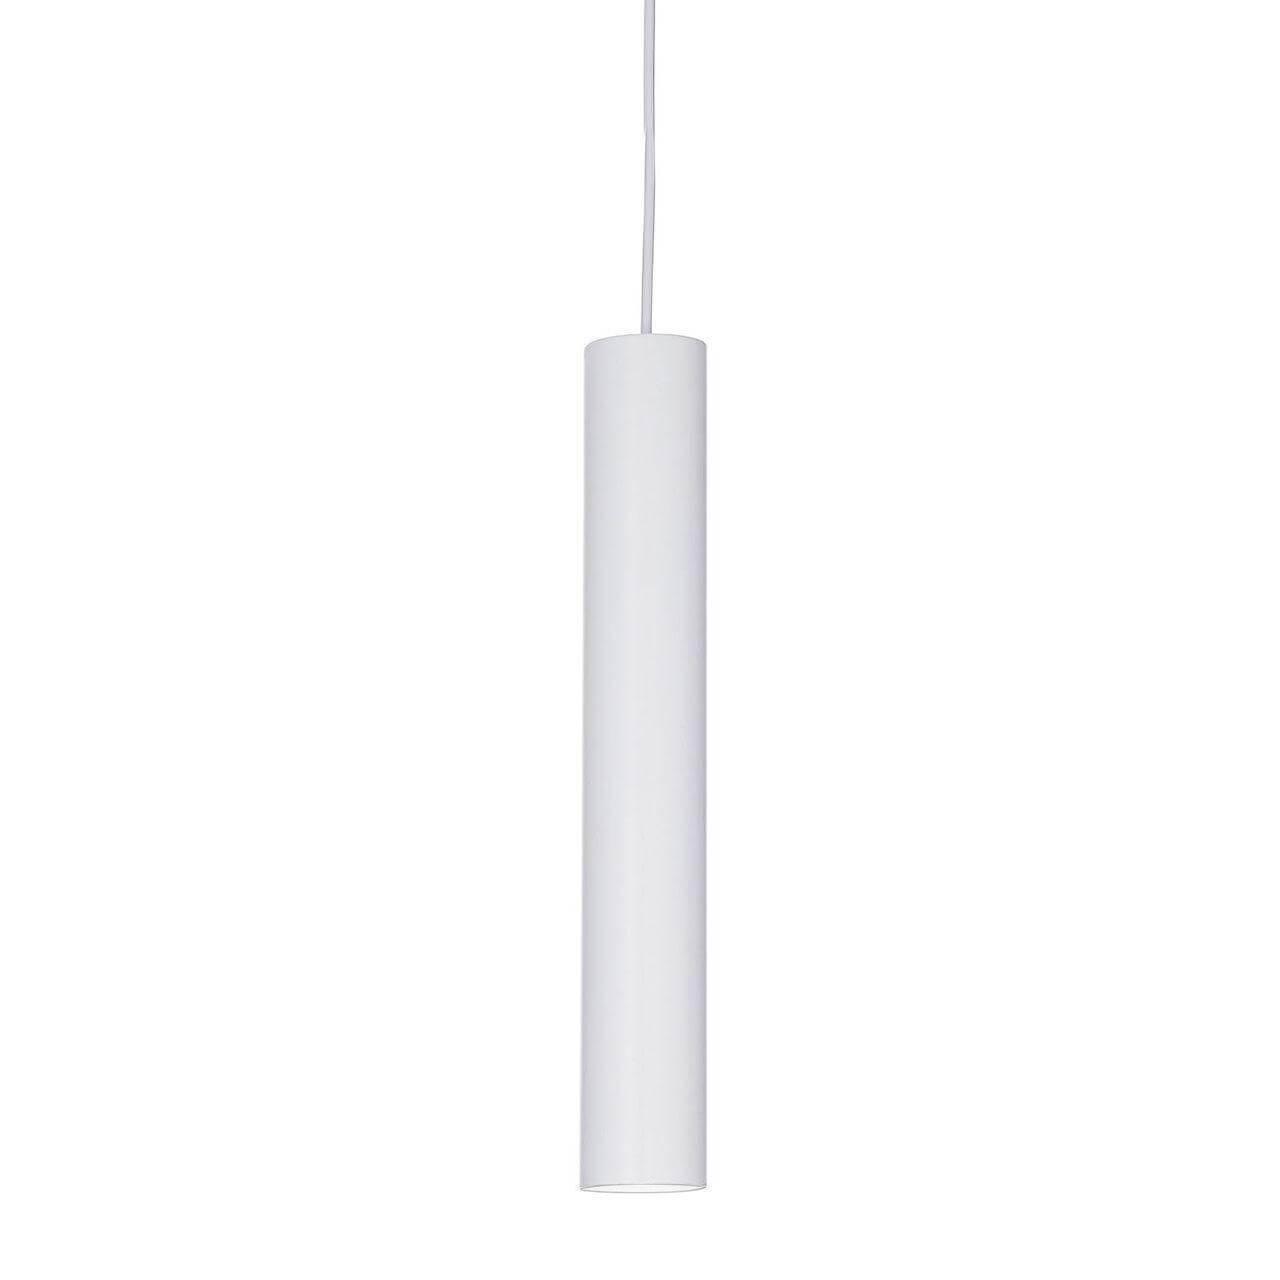 Подвесной светодиодный светильник Ideal Lux Ultrathin D040 Round Bianco 156682 pointdev ideal migration